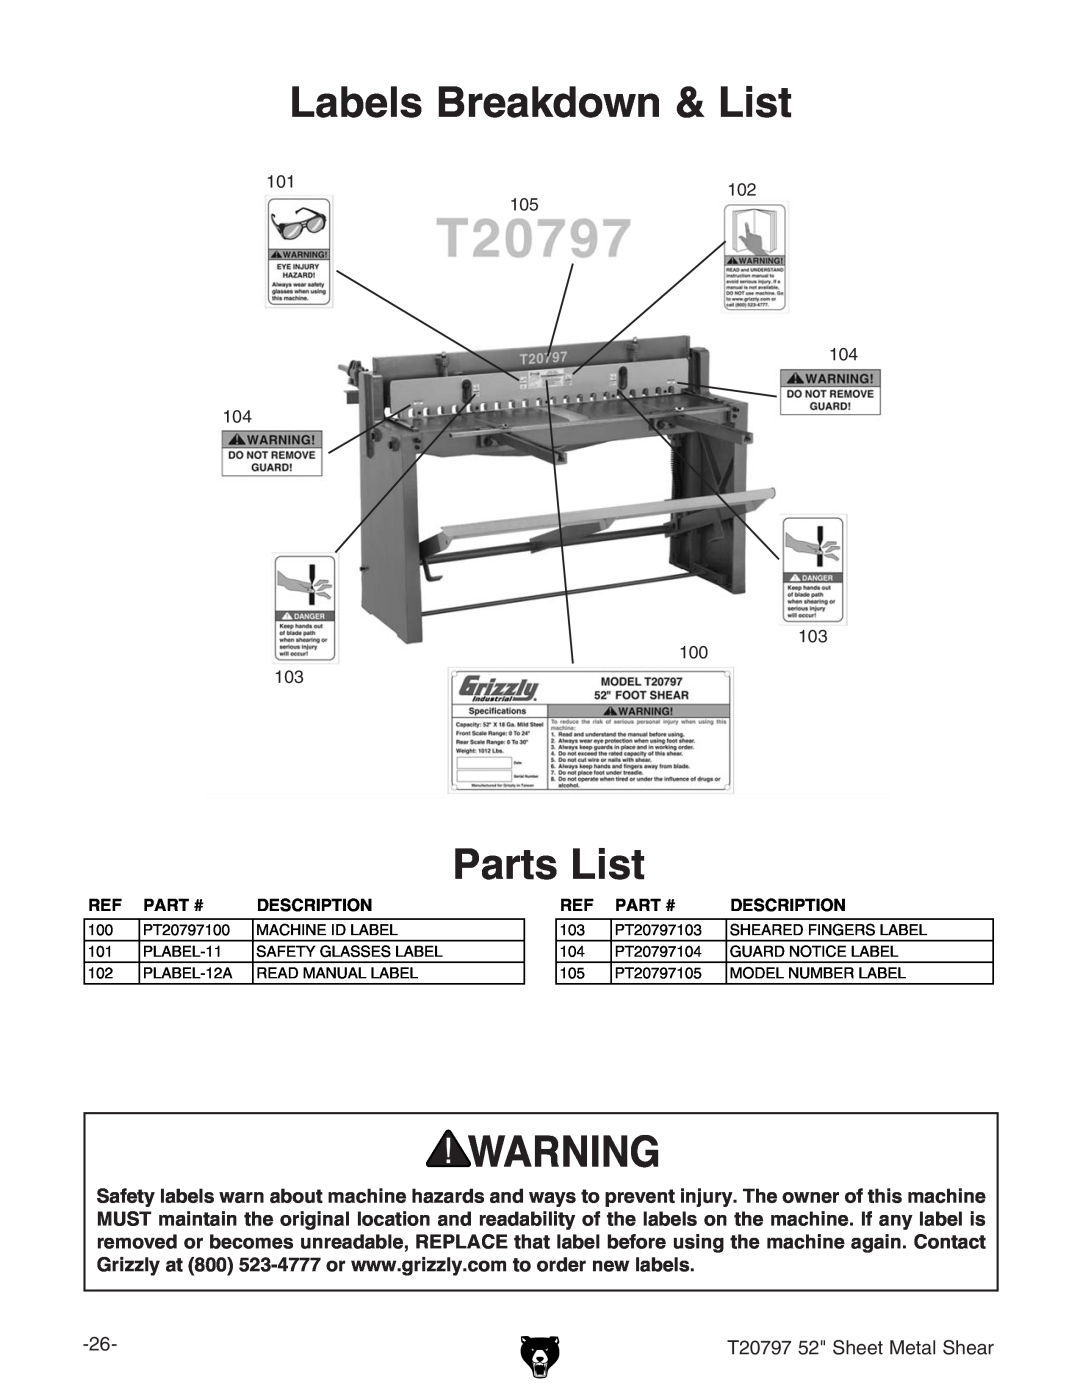 Grizzly T20797 owner manual Labels Breakdown & List, Parts List, I%,.,*HZZiBZiVaHZVg, Part #, Description 